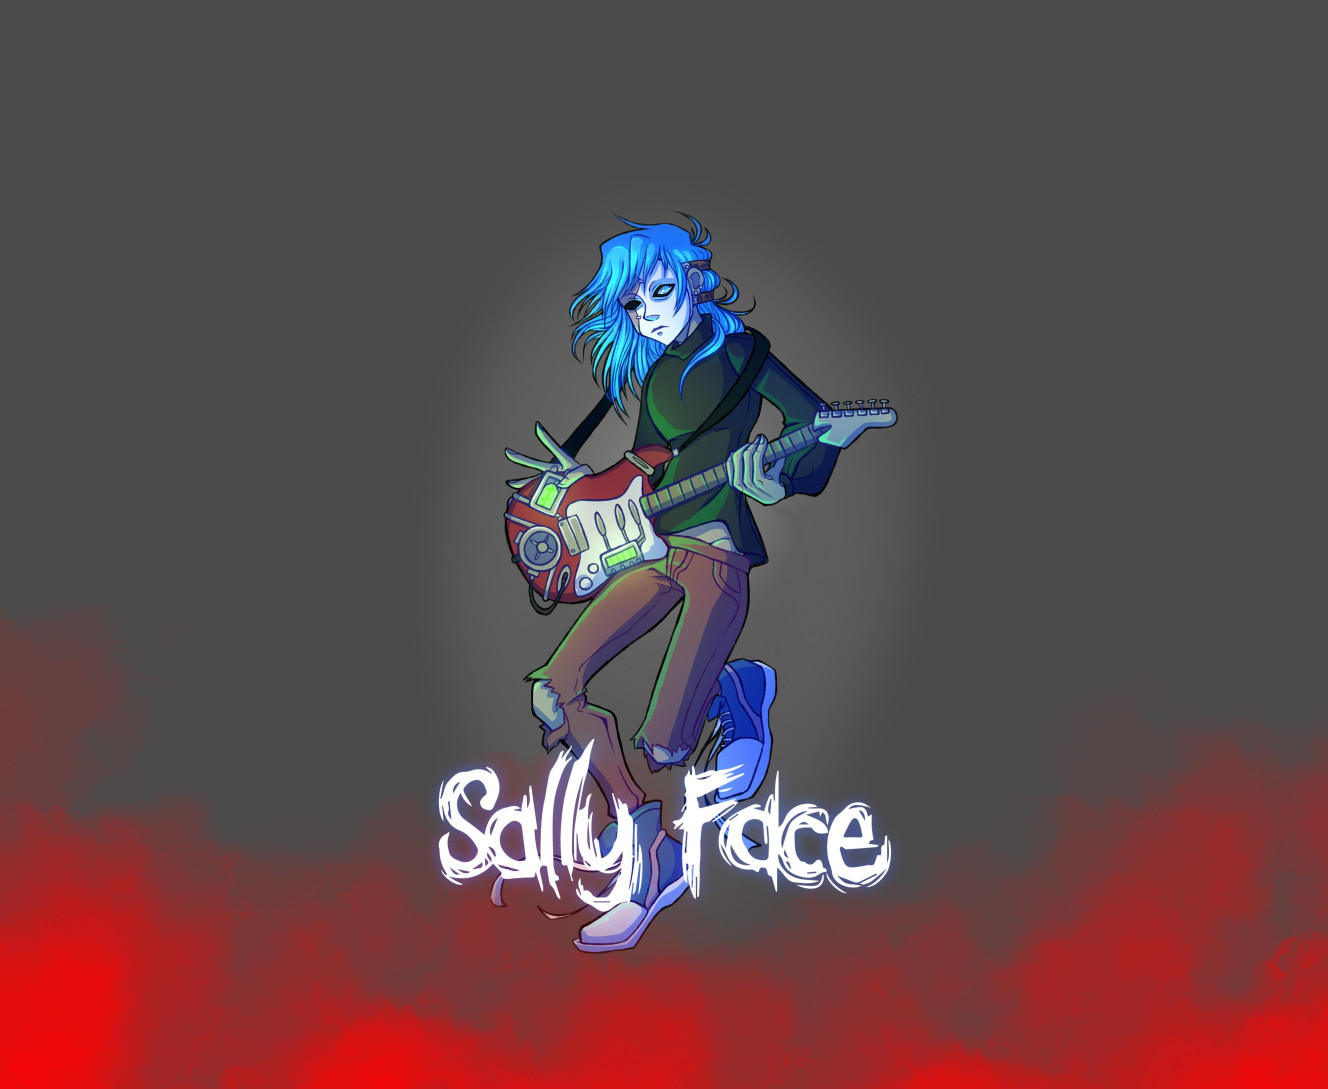 Sally Face (16)